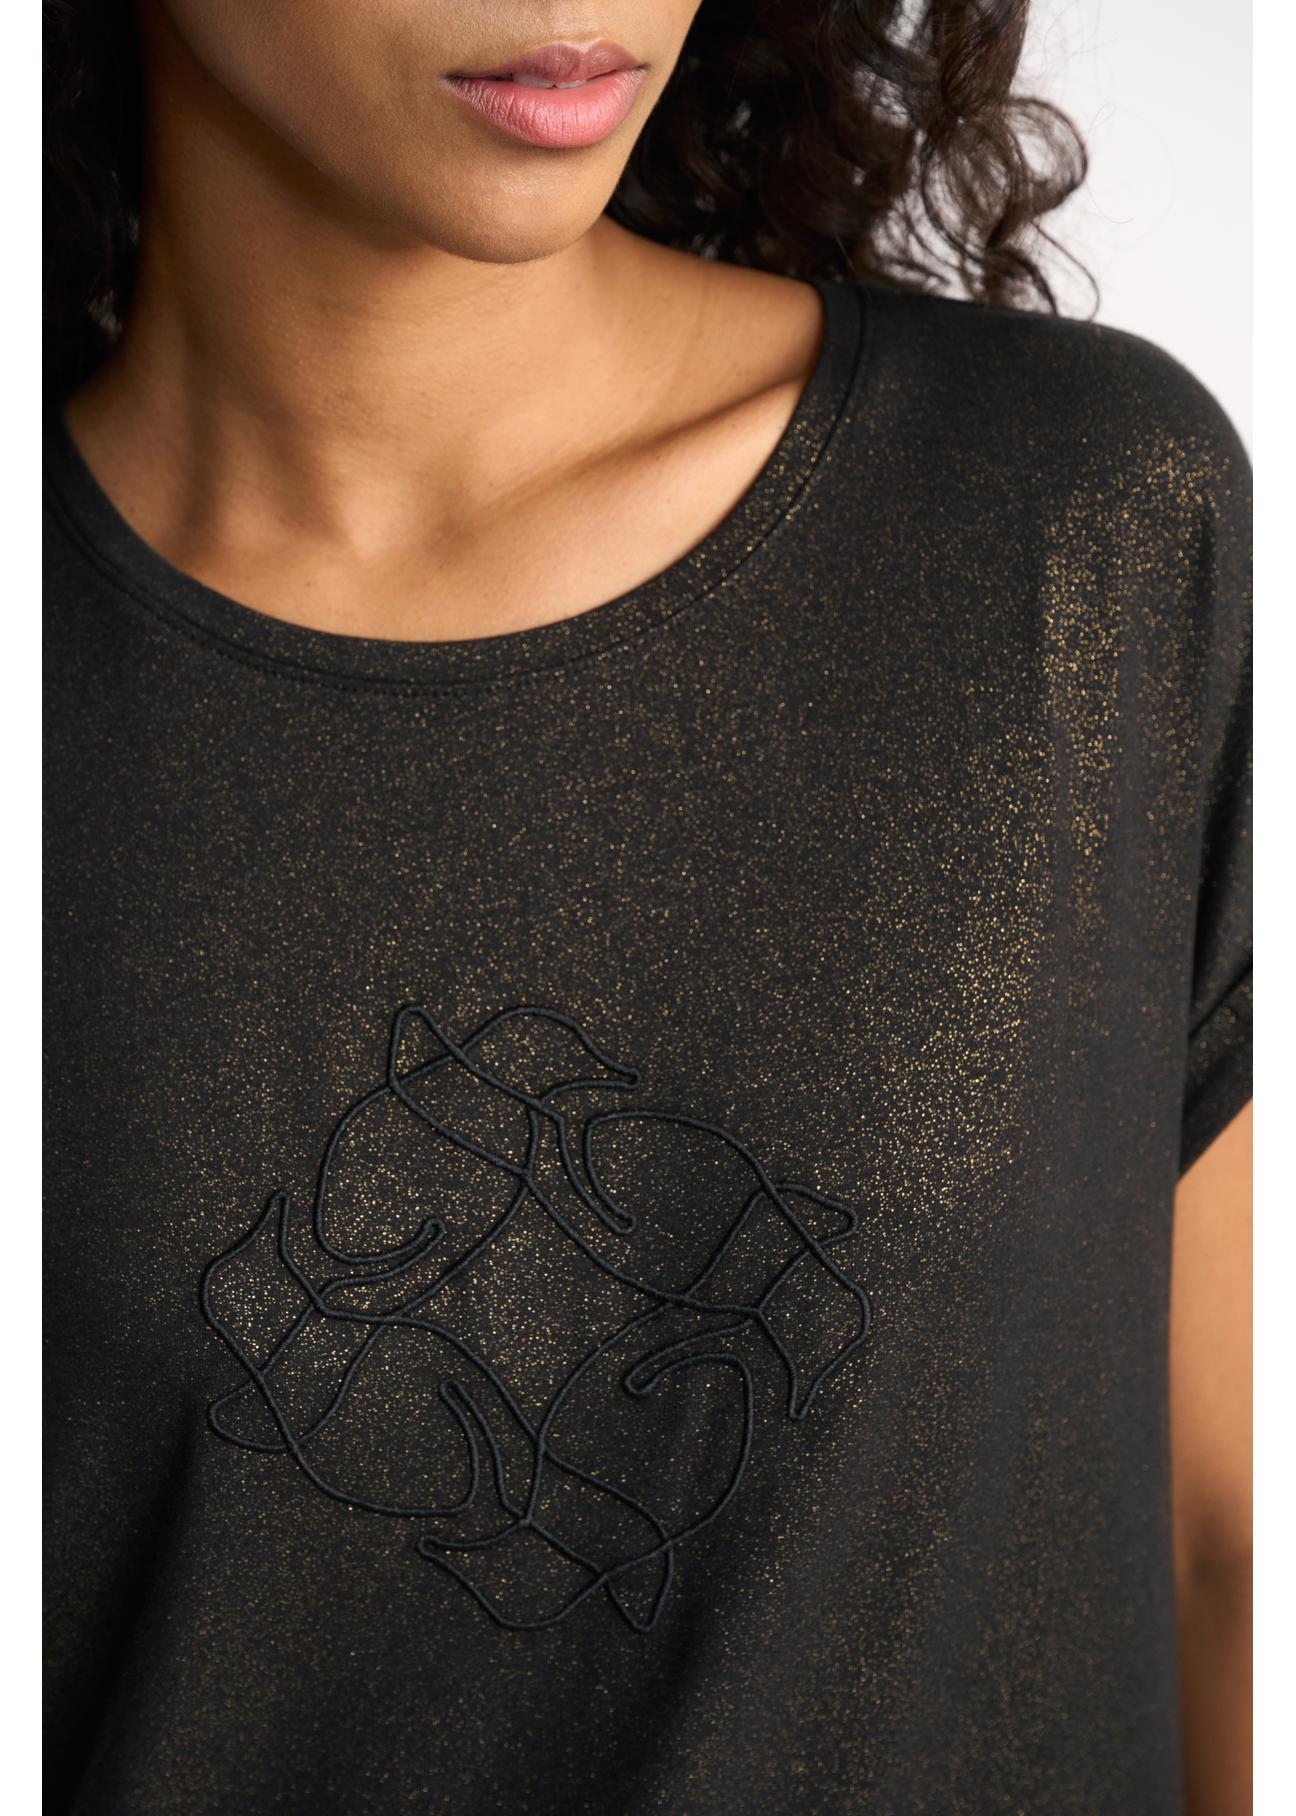 Czarny pozłacany T-shirt damski z logo TSHDT-0100-99(Z22)